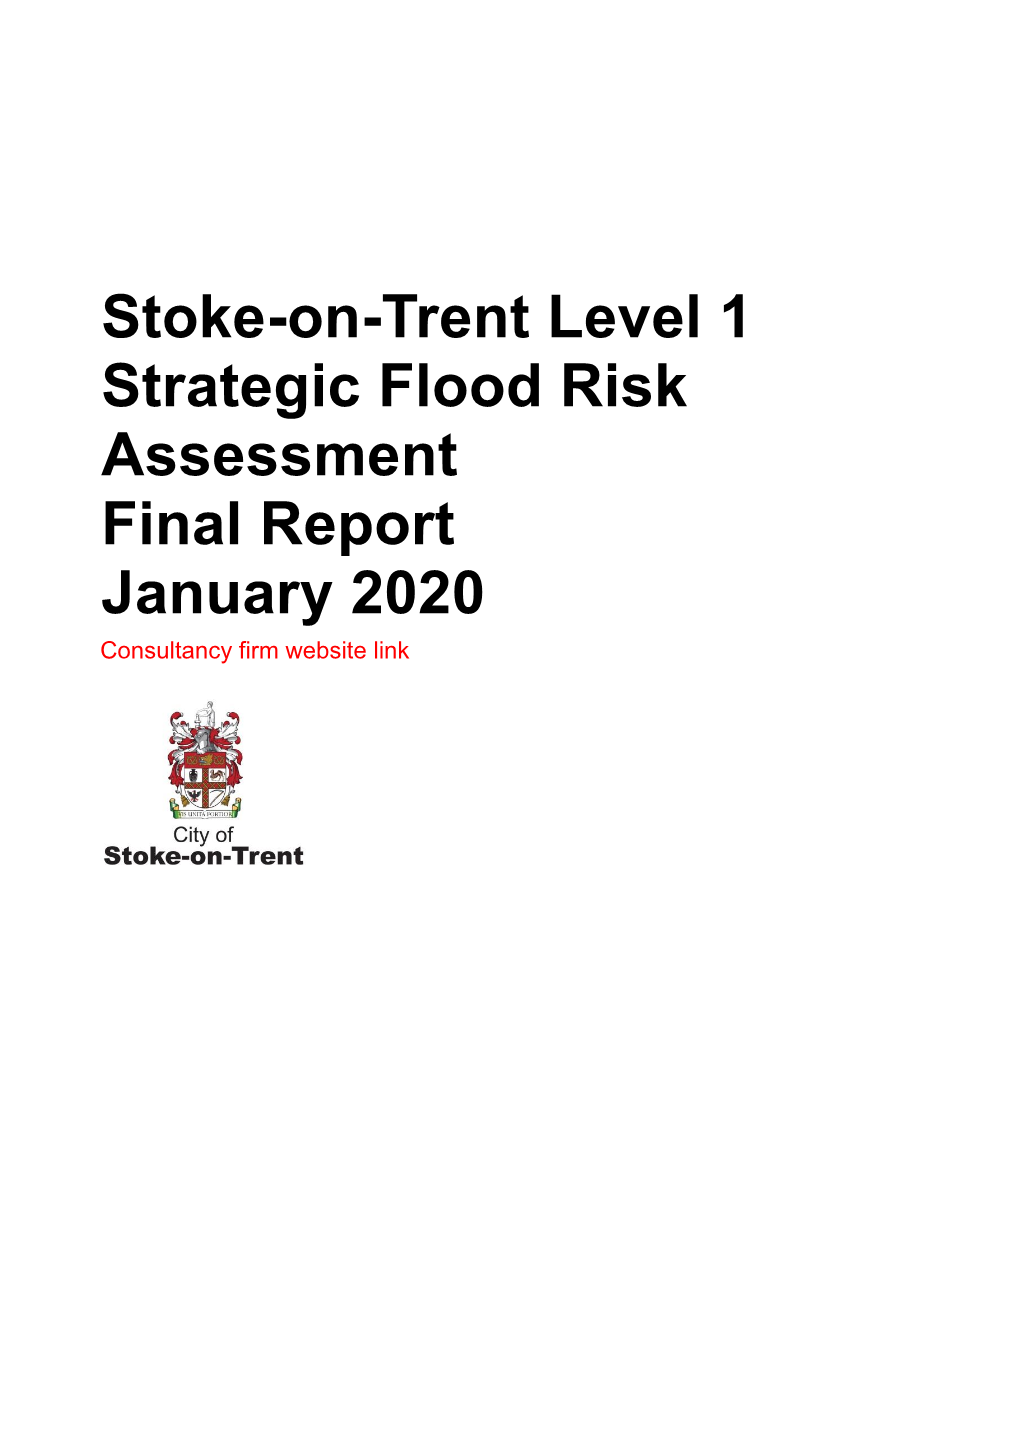 Stoke-On-Trent Level 1 Strategic Flood Risk Assessment Final Report January 2020 Consultancy Firm Website Link